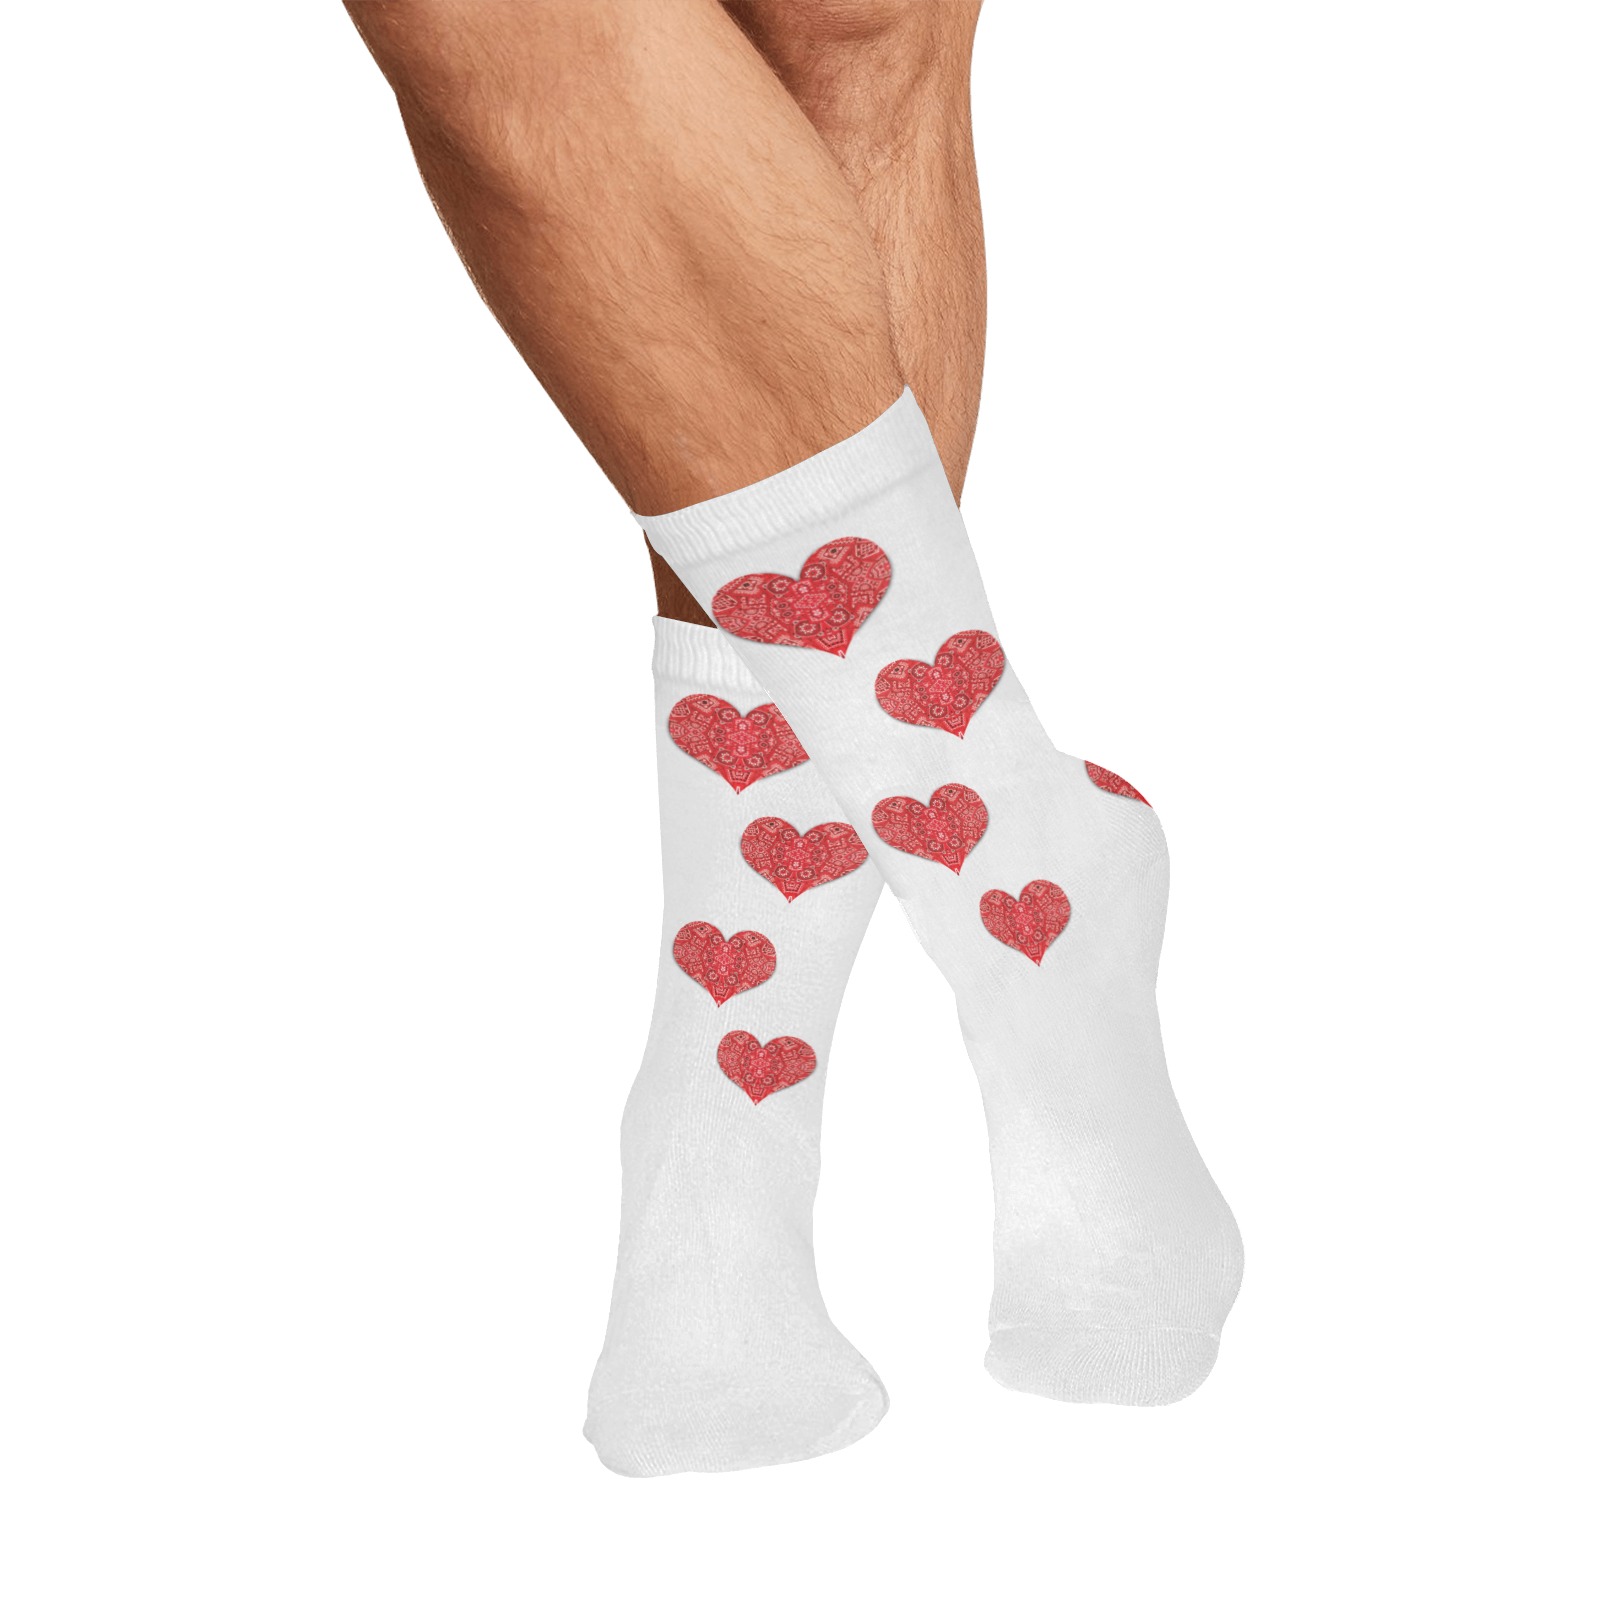 Bandana Hearts on White All Over Print Socks for Men